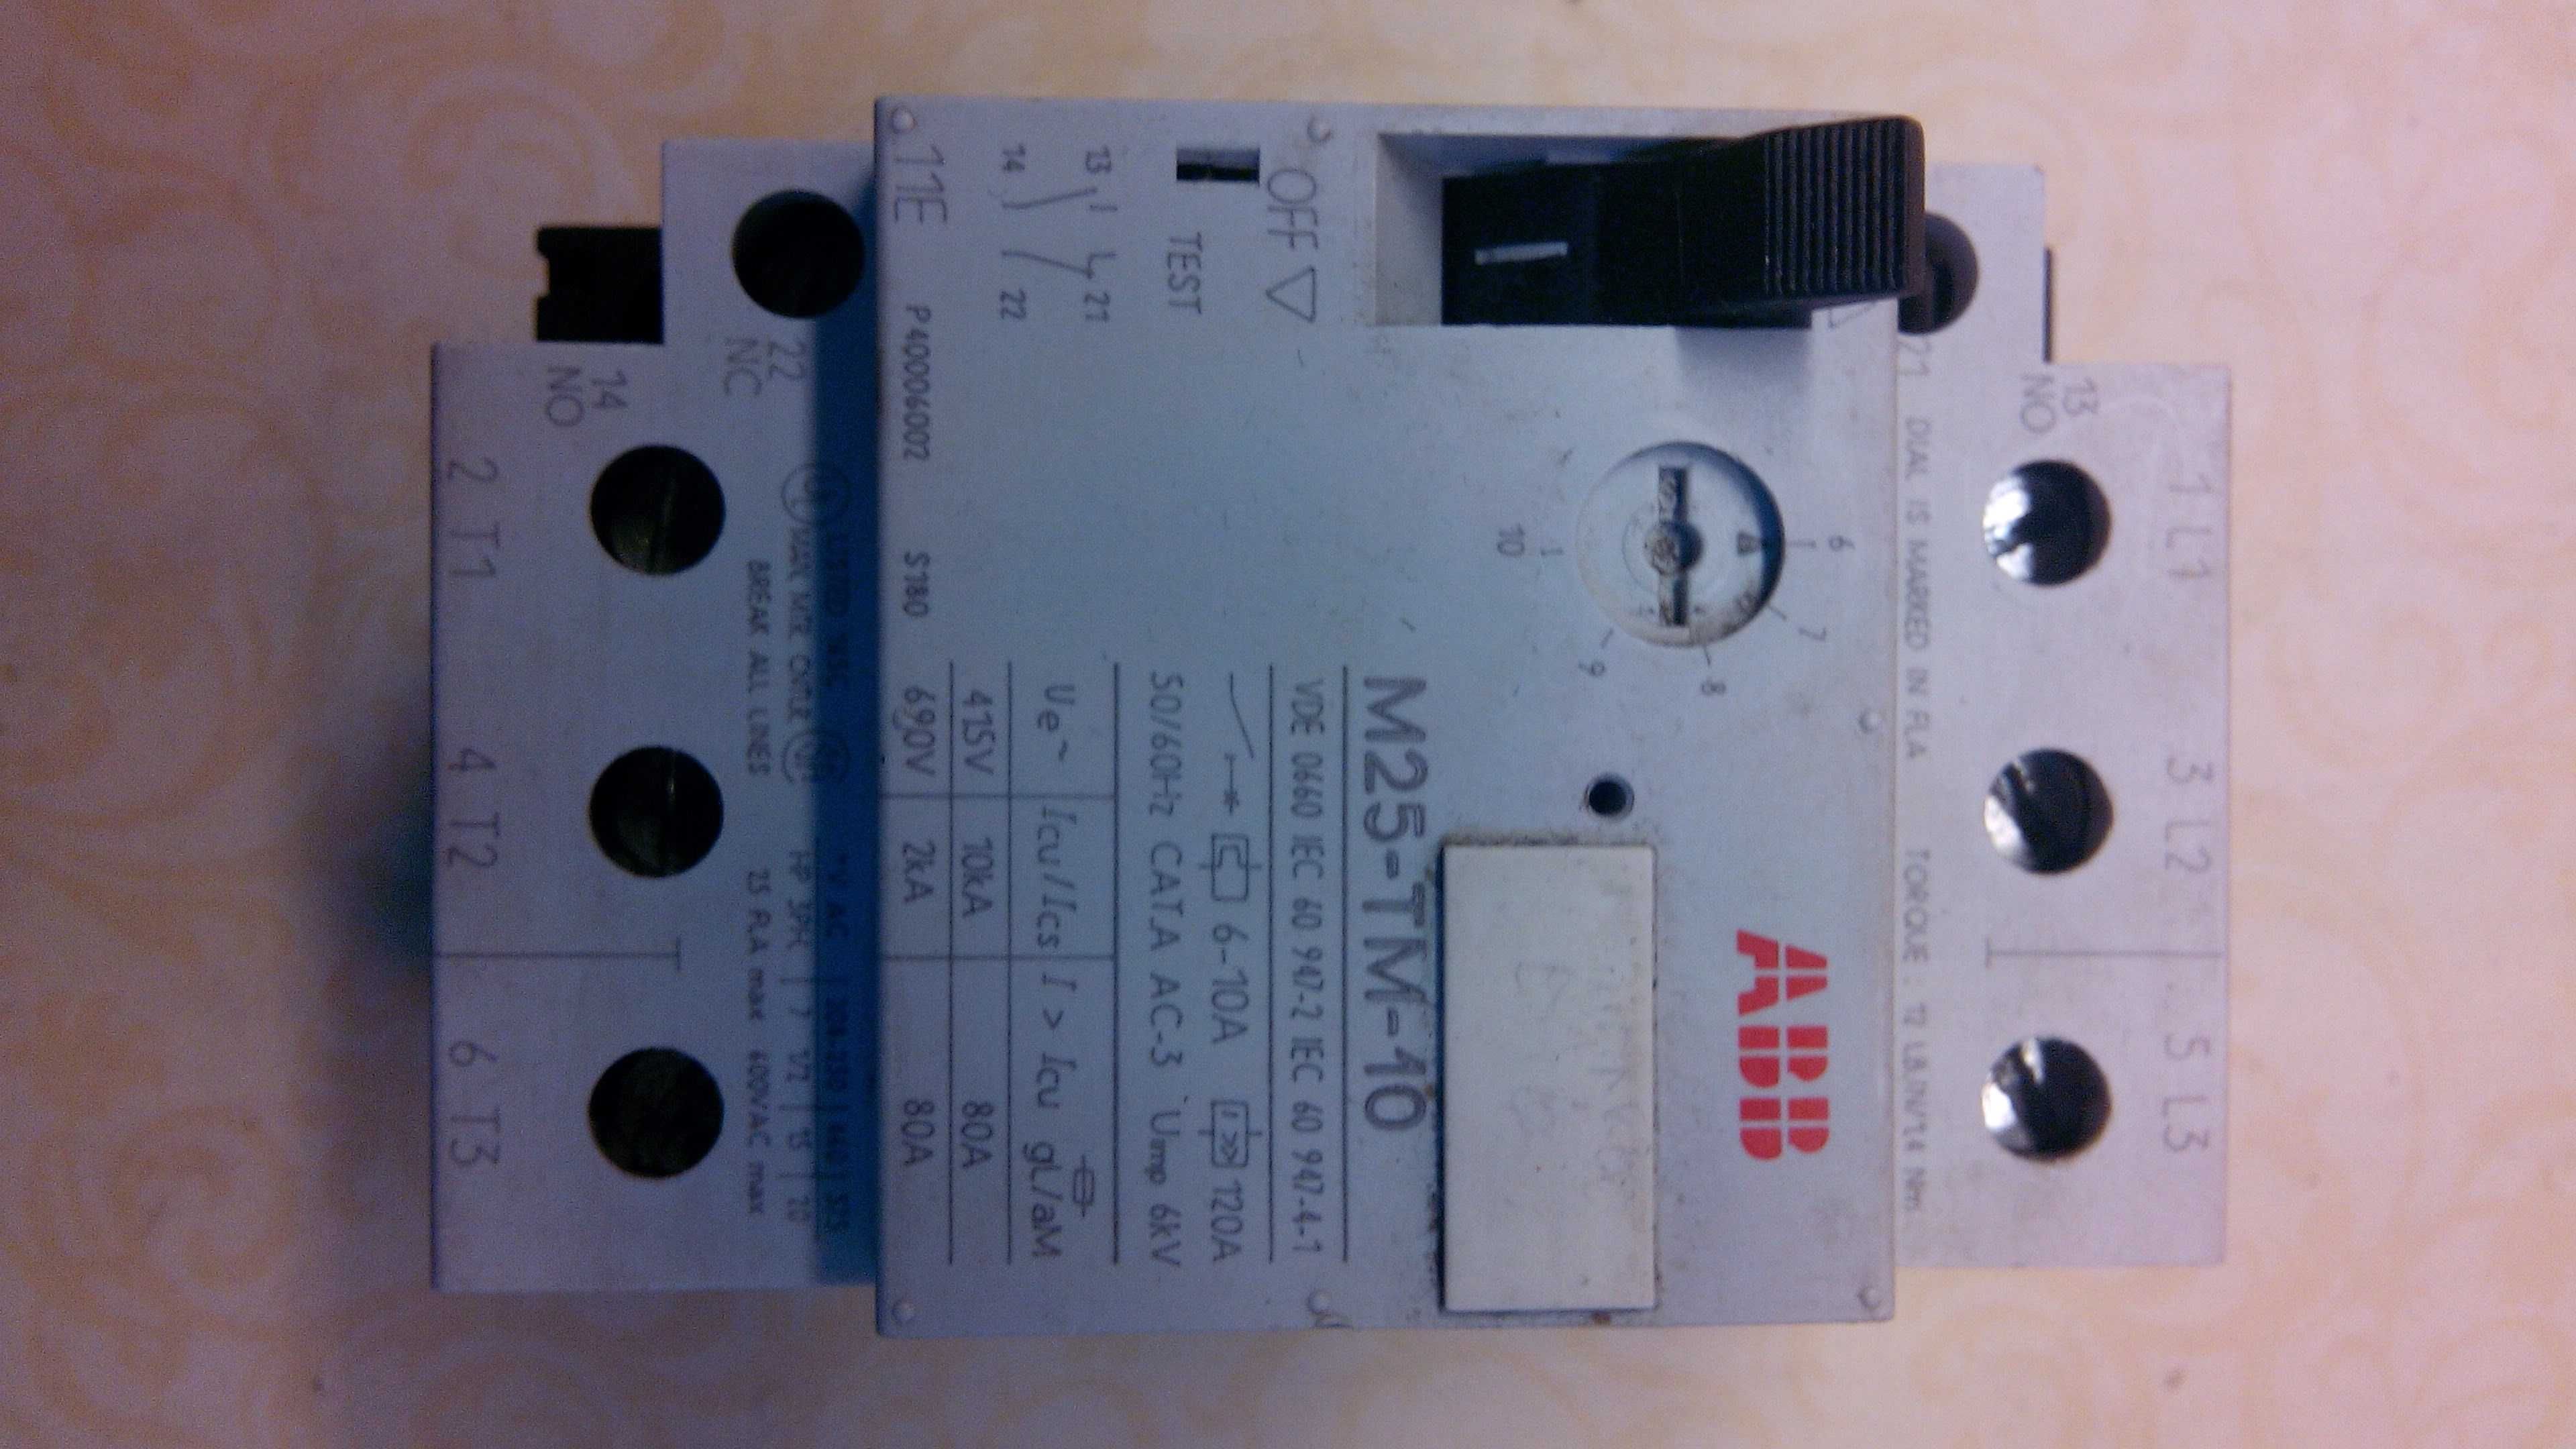 Автоматический выключатель ABB MS 325